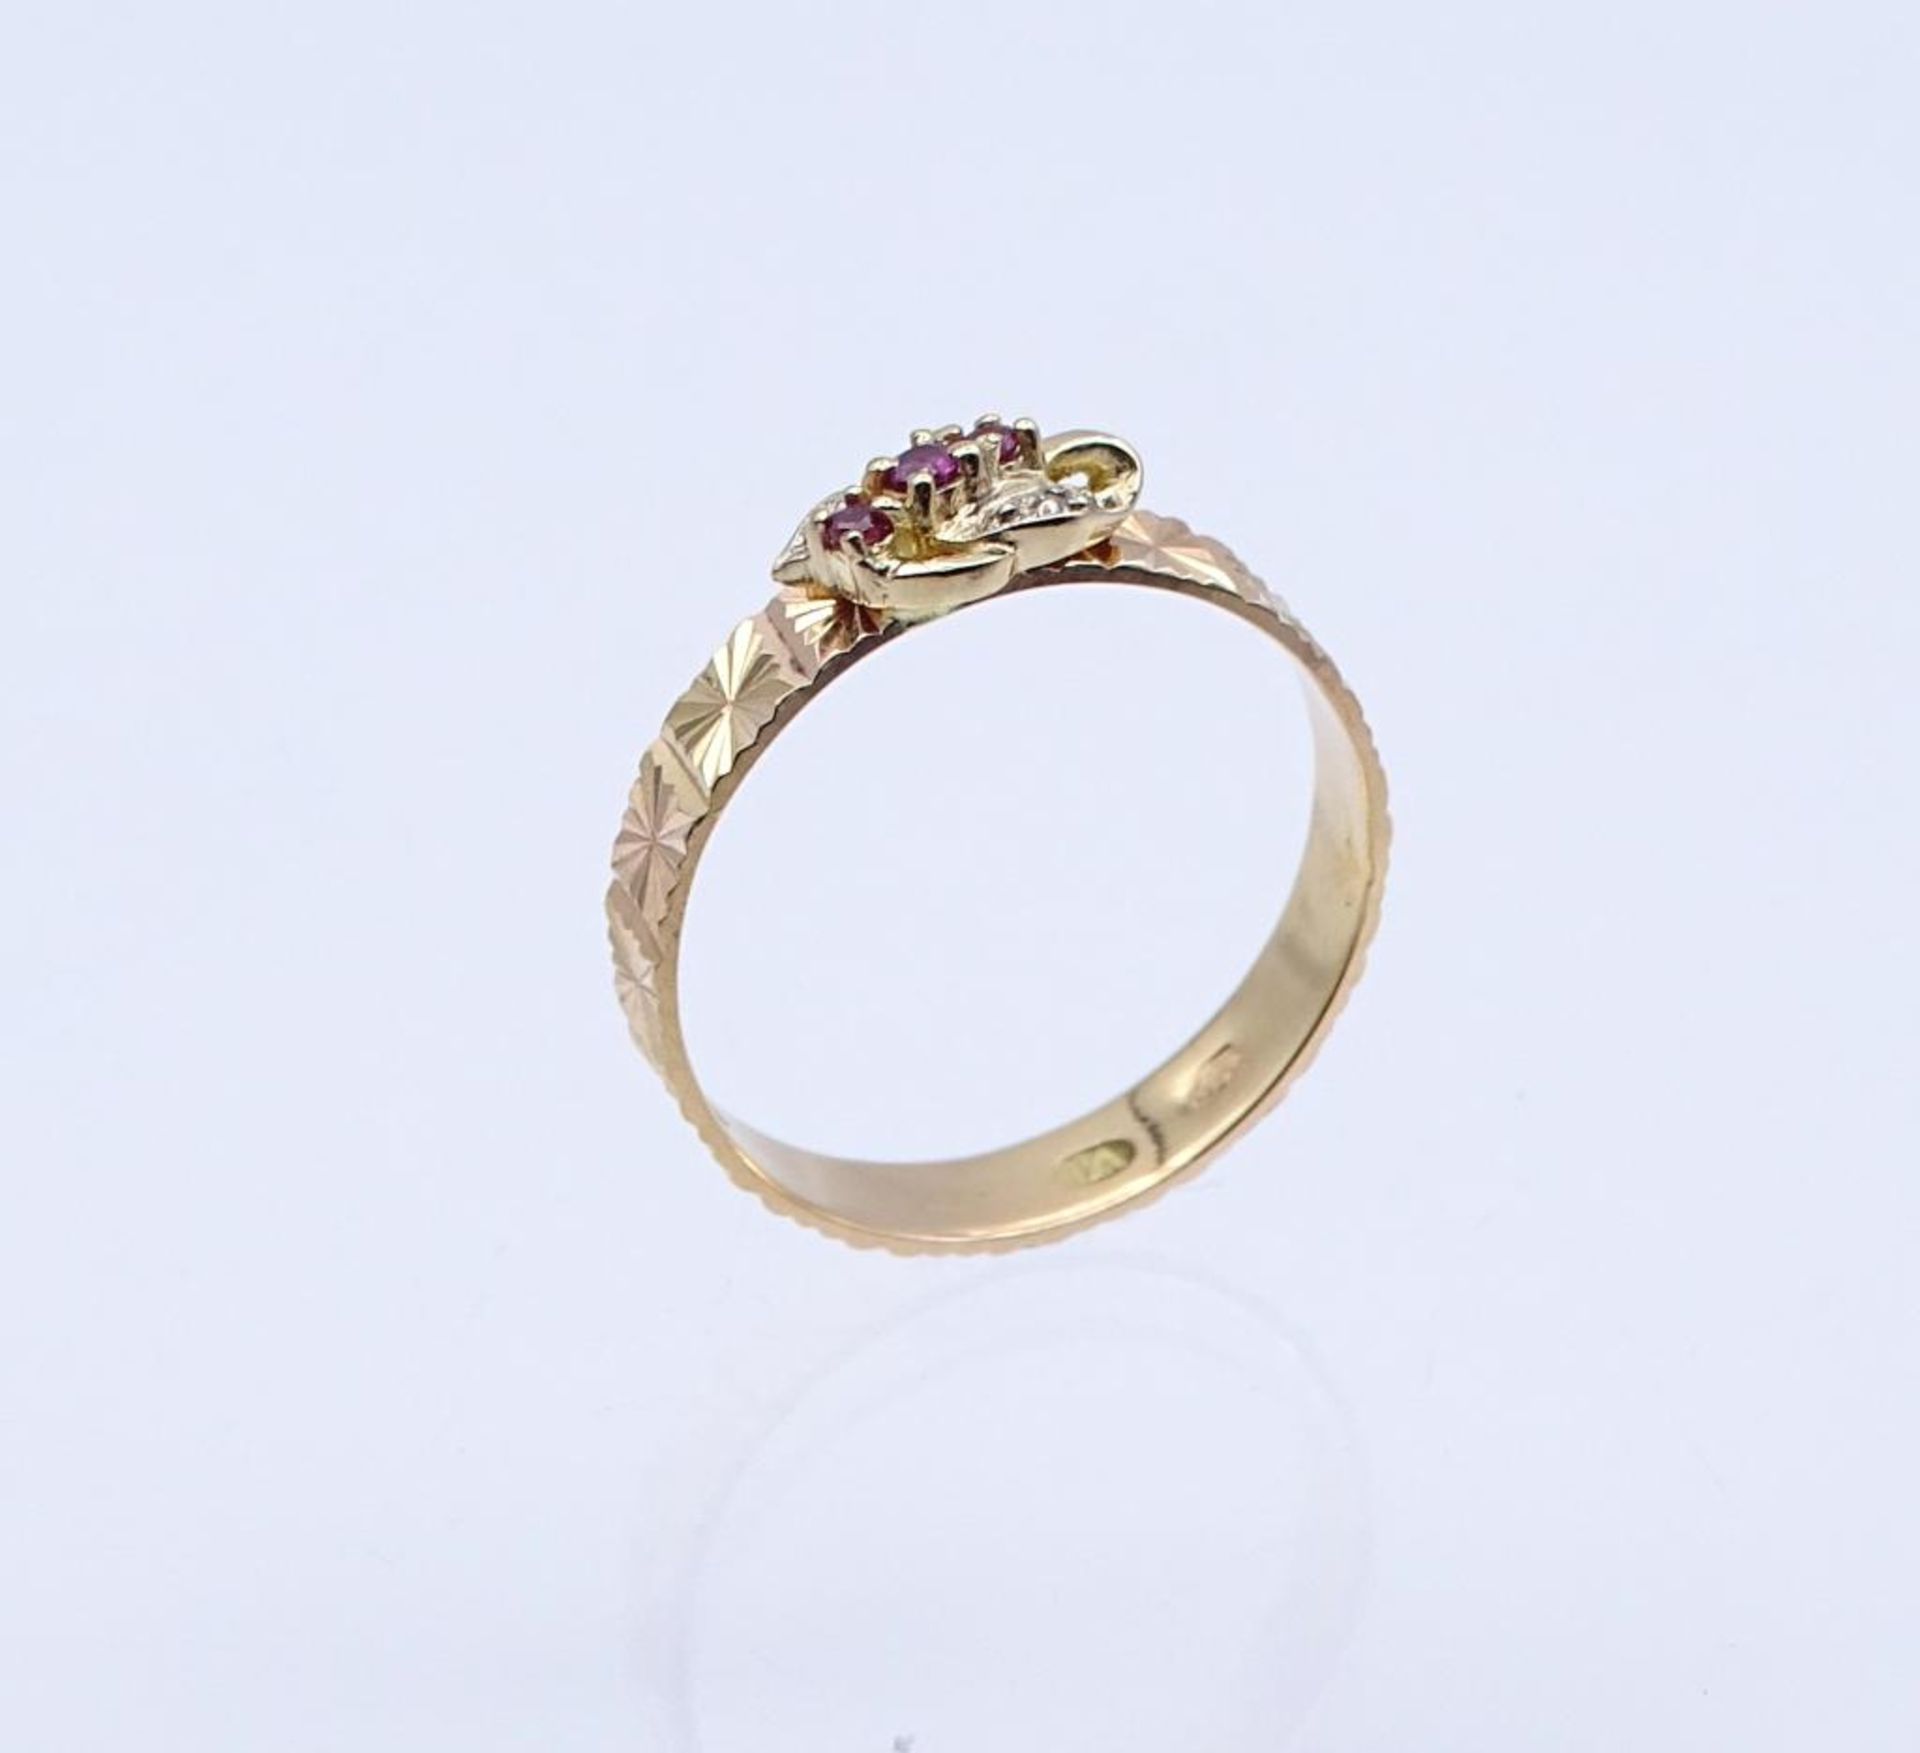 916er Rotgold Ring mit drei Rubine und ein Diamantsplitter,arabisch gestempelt, 3,2gr., RG 63- - - - Bild 3 aus 7